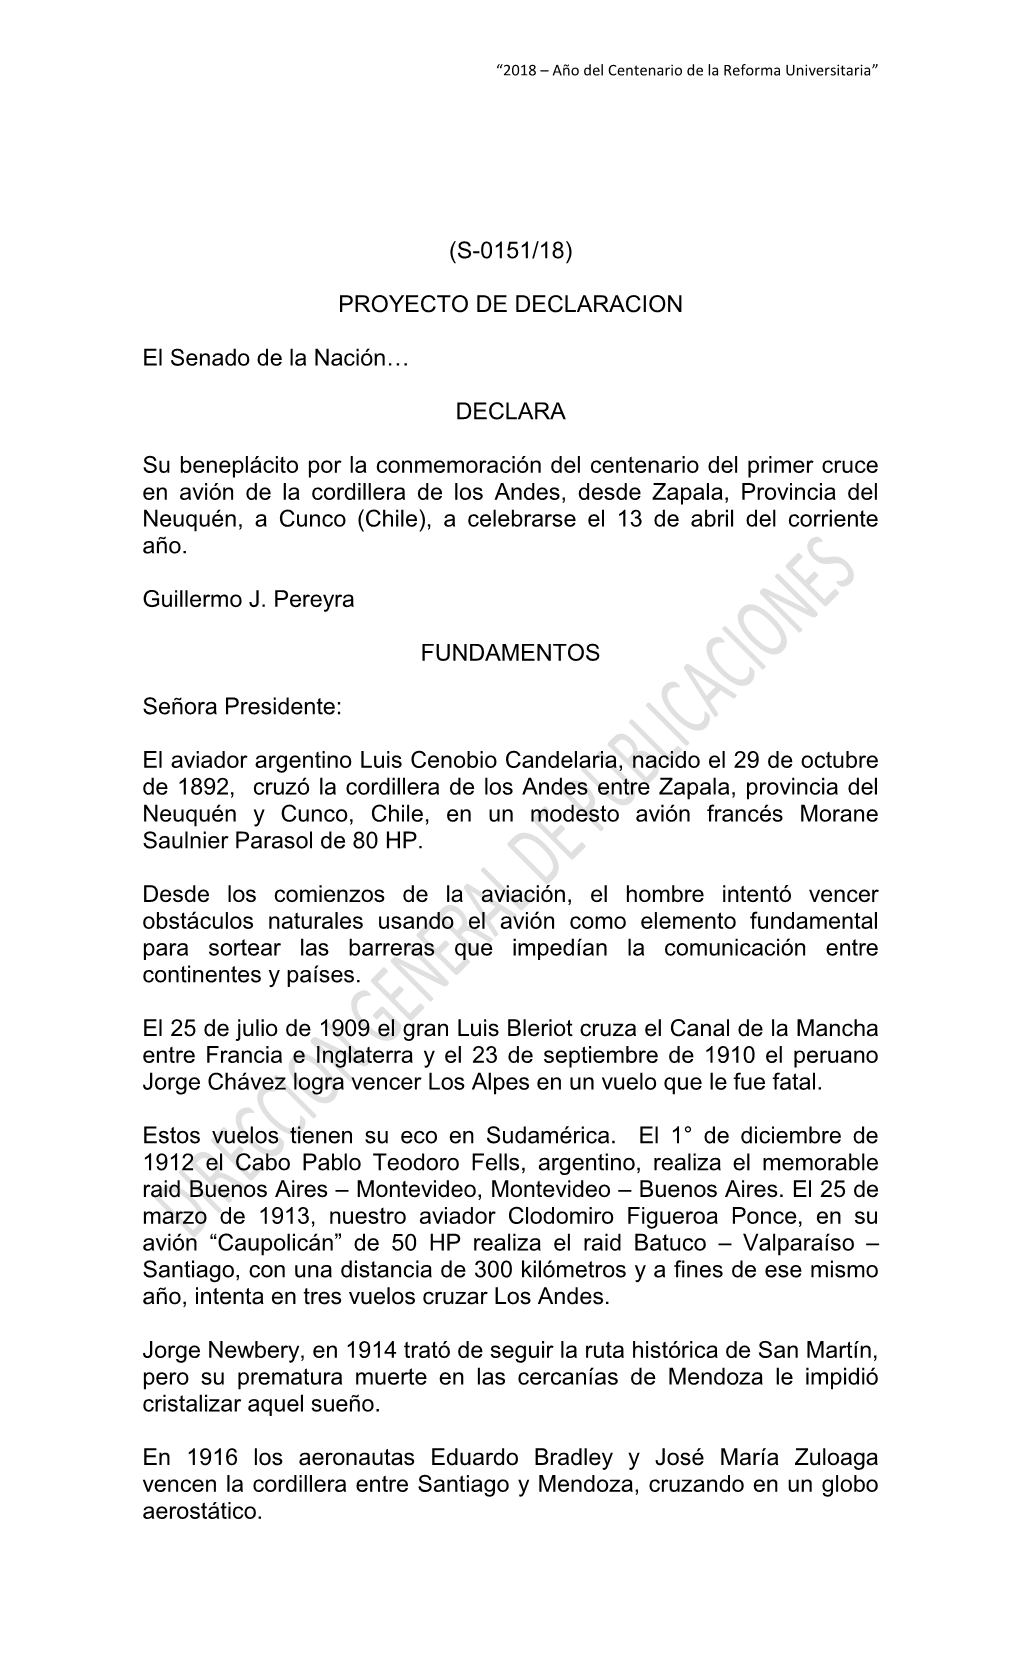 (S-0151/18) PROYECTO DE DECLARACION El Senado De La